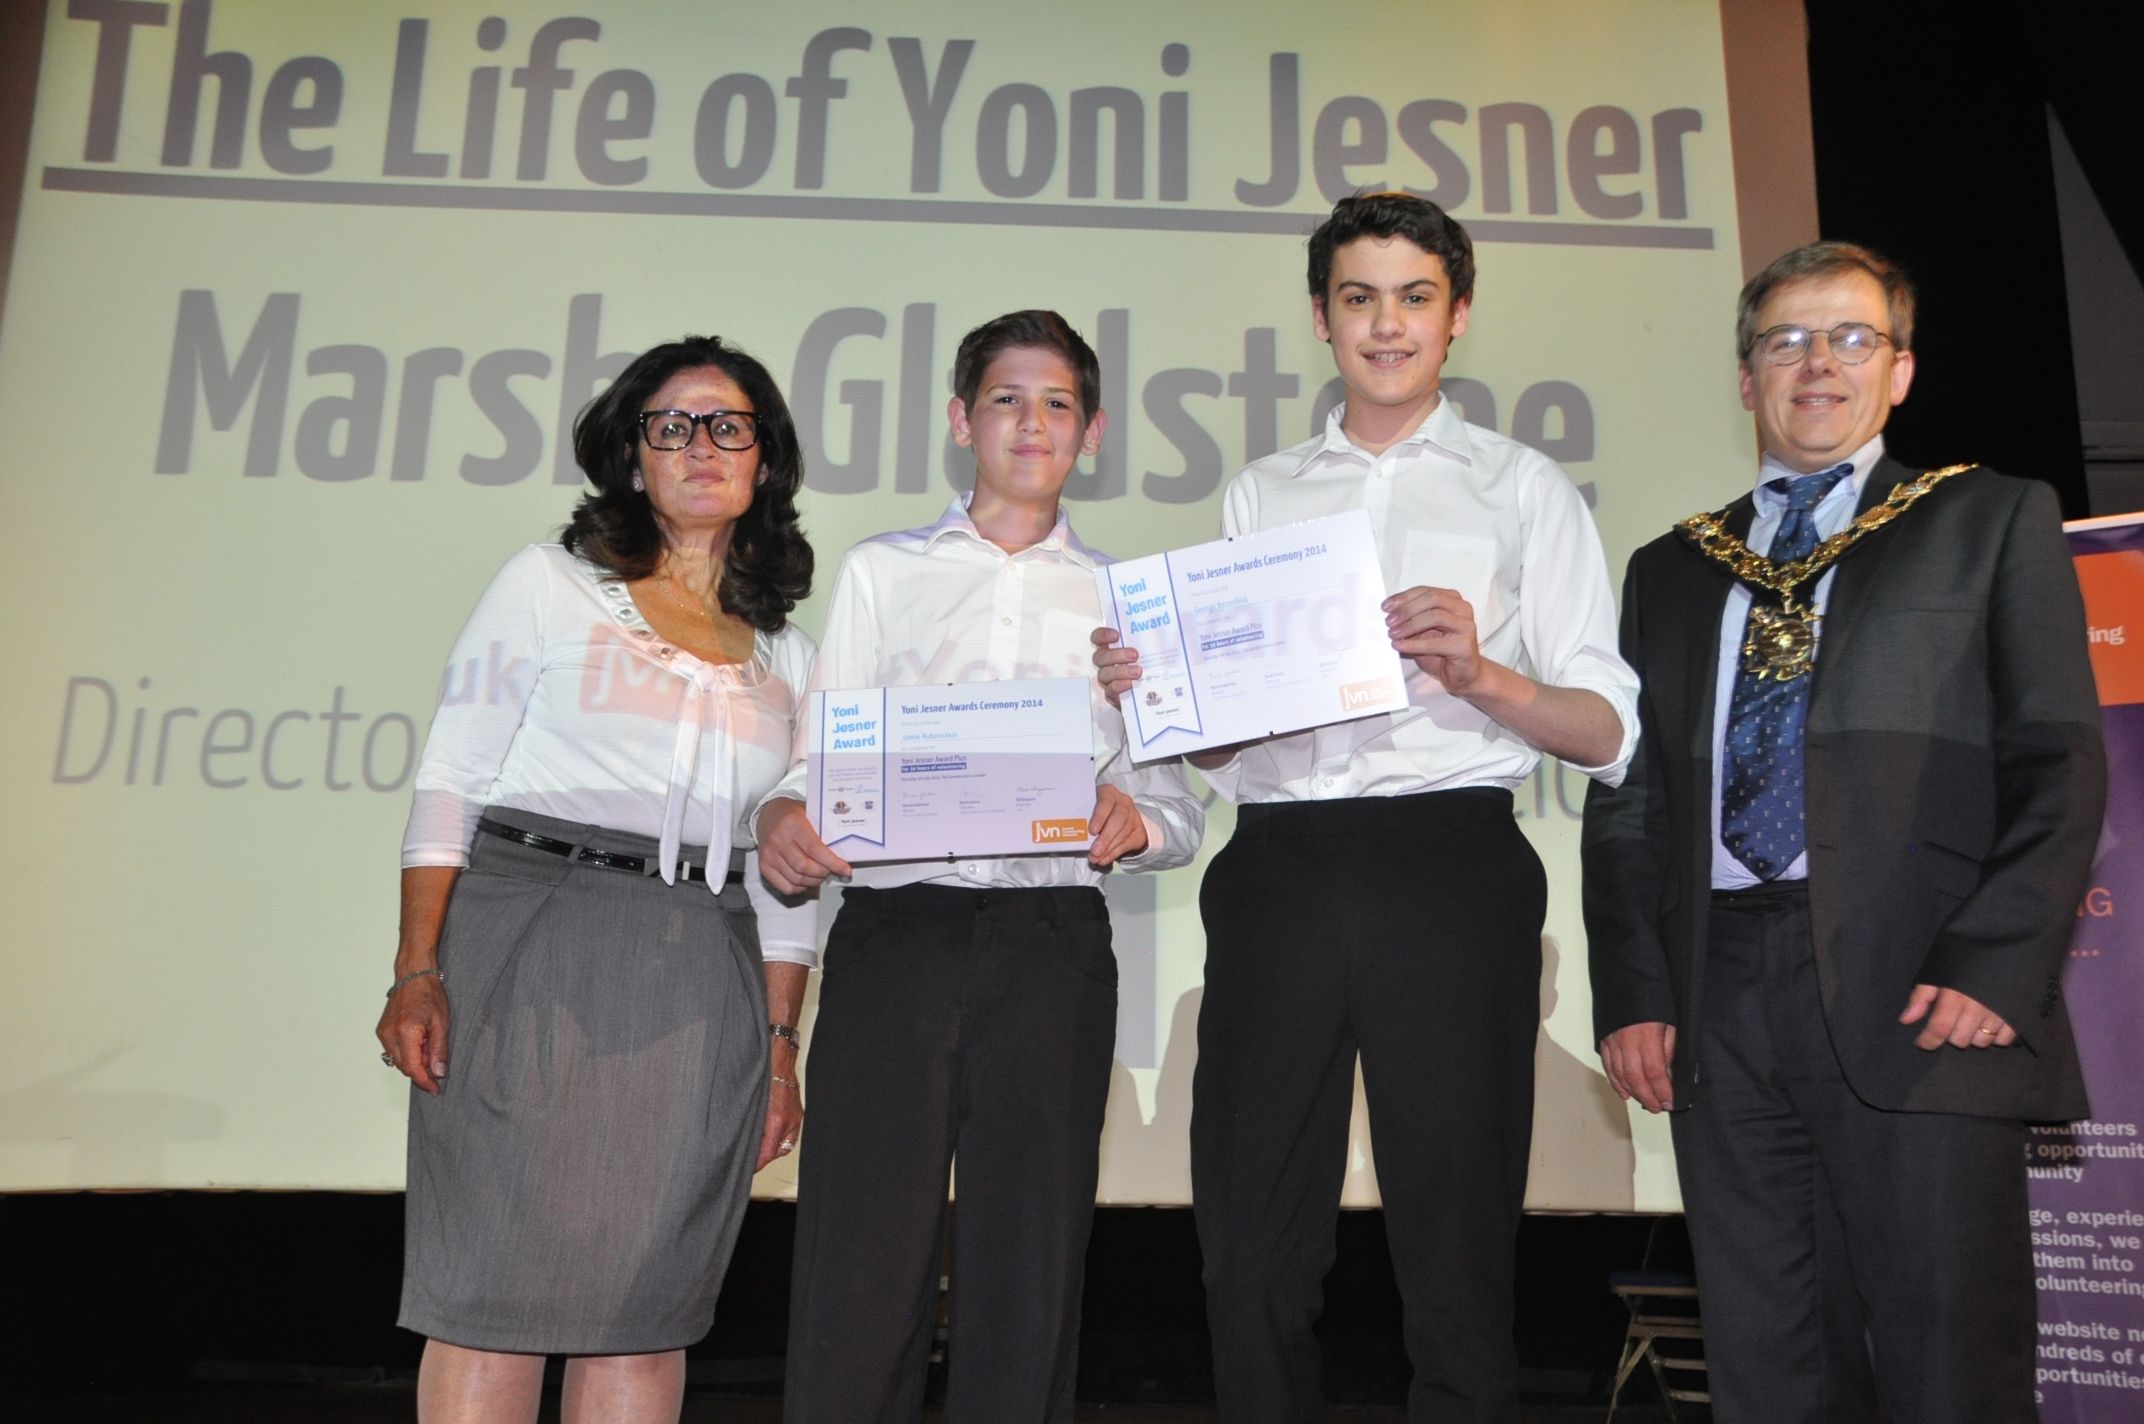 Yoni Jesner Awards 2014